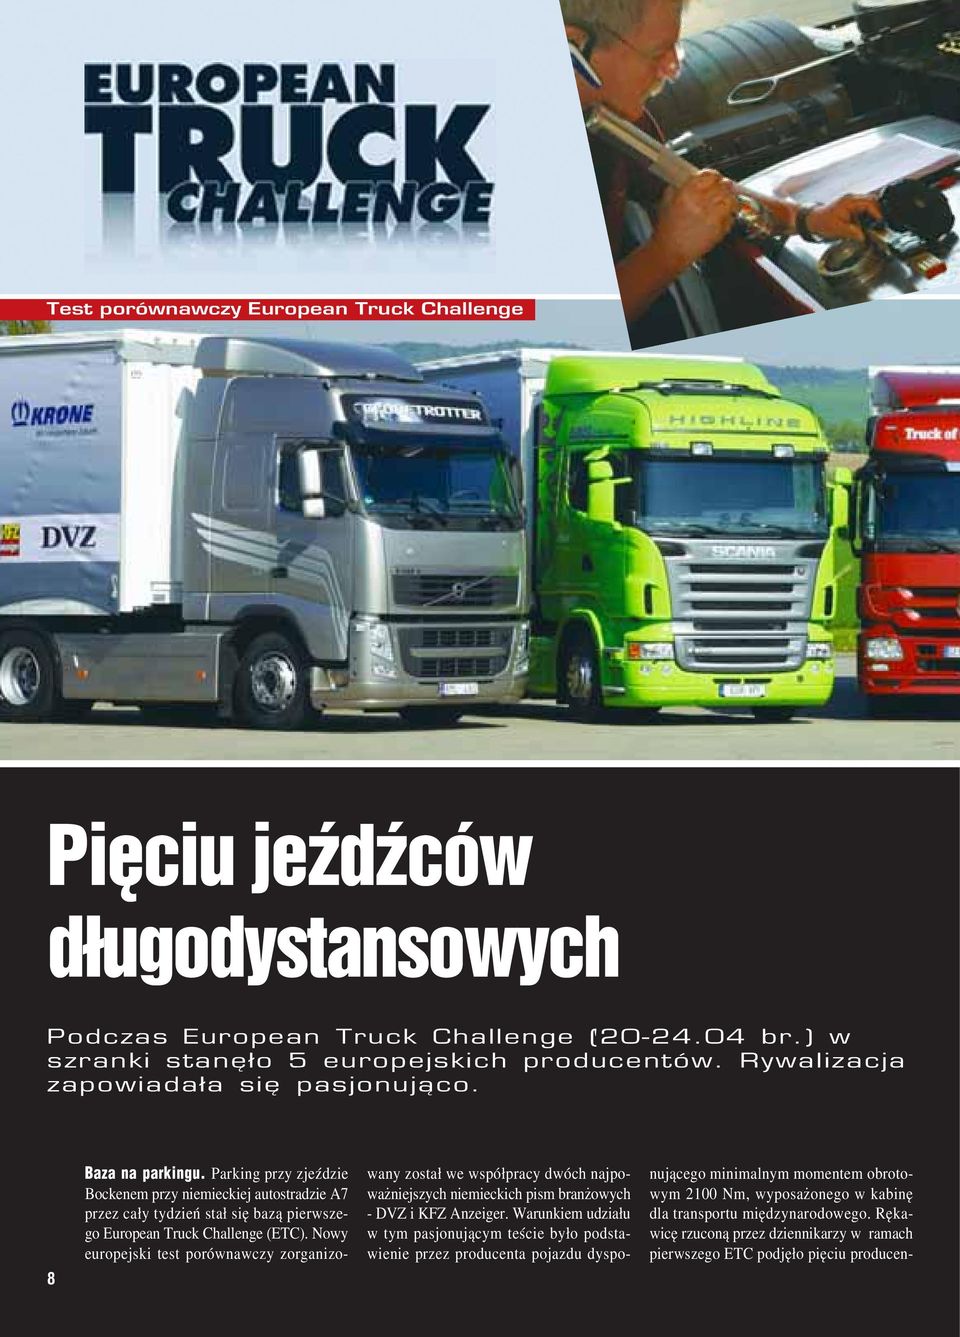 Parking przy zjeździe Bockenem przy niemieckiej autostradzie A7 przez cały tydzień stał się bazą pierwsze go European Truck Challenge (ETC).